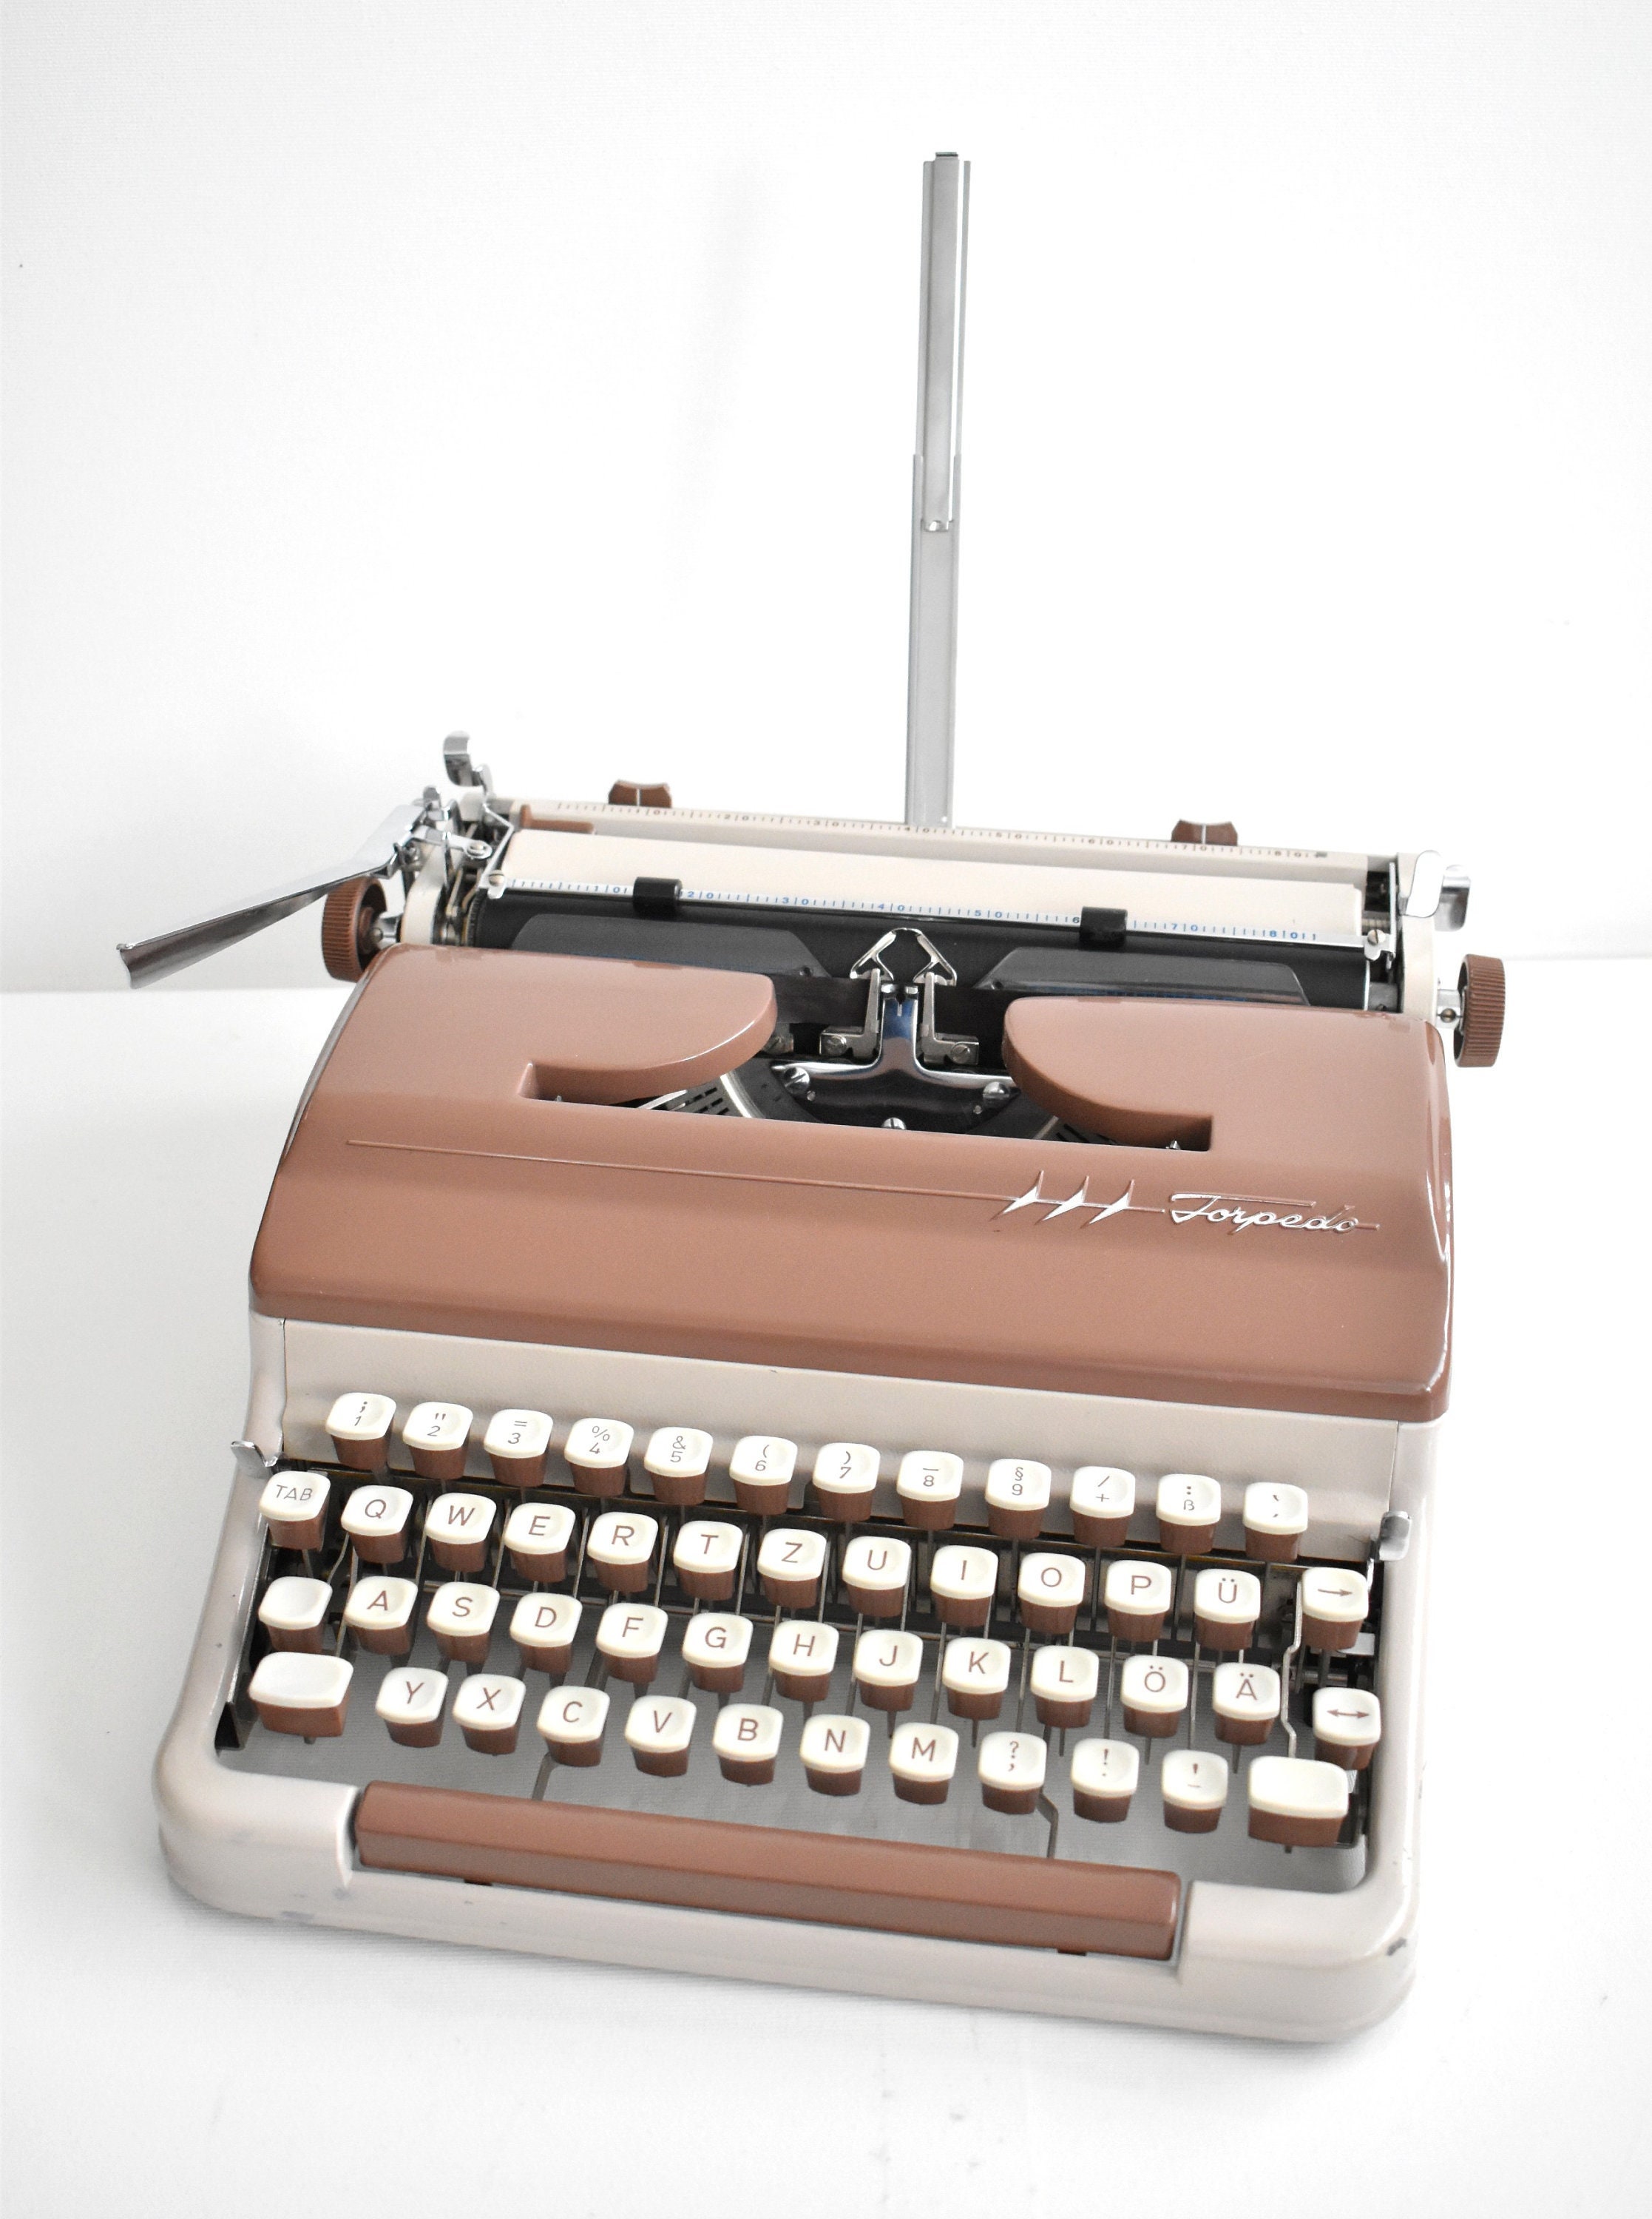 Machine à écrire Voss Wuppertal 1950. Avec sa boîte